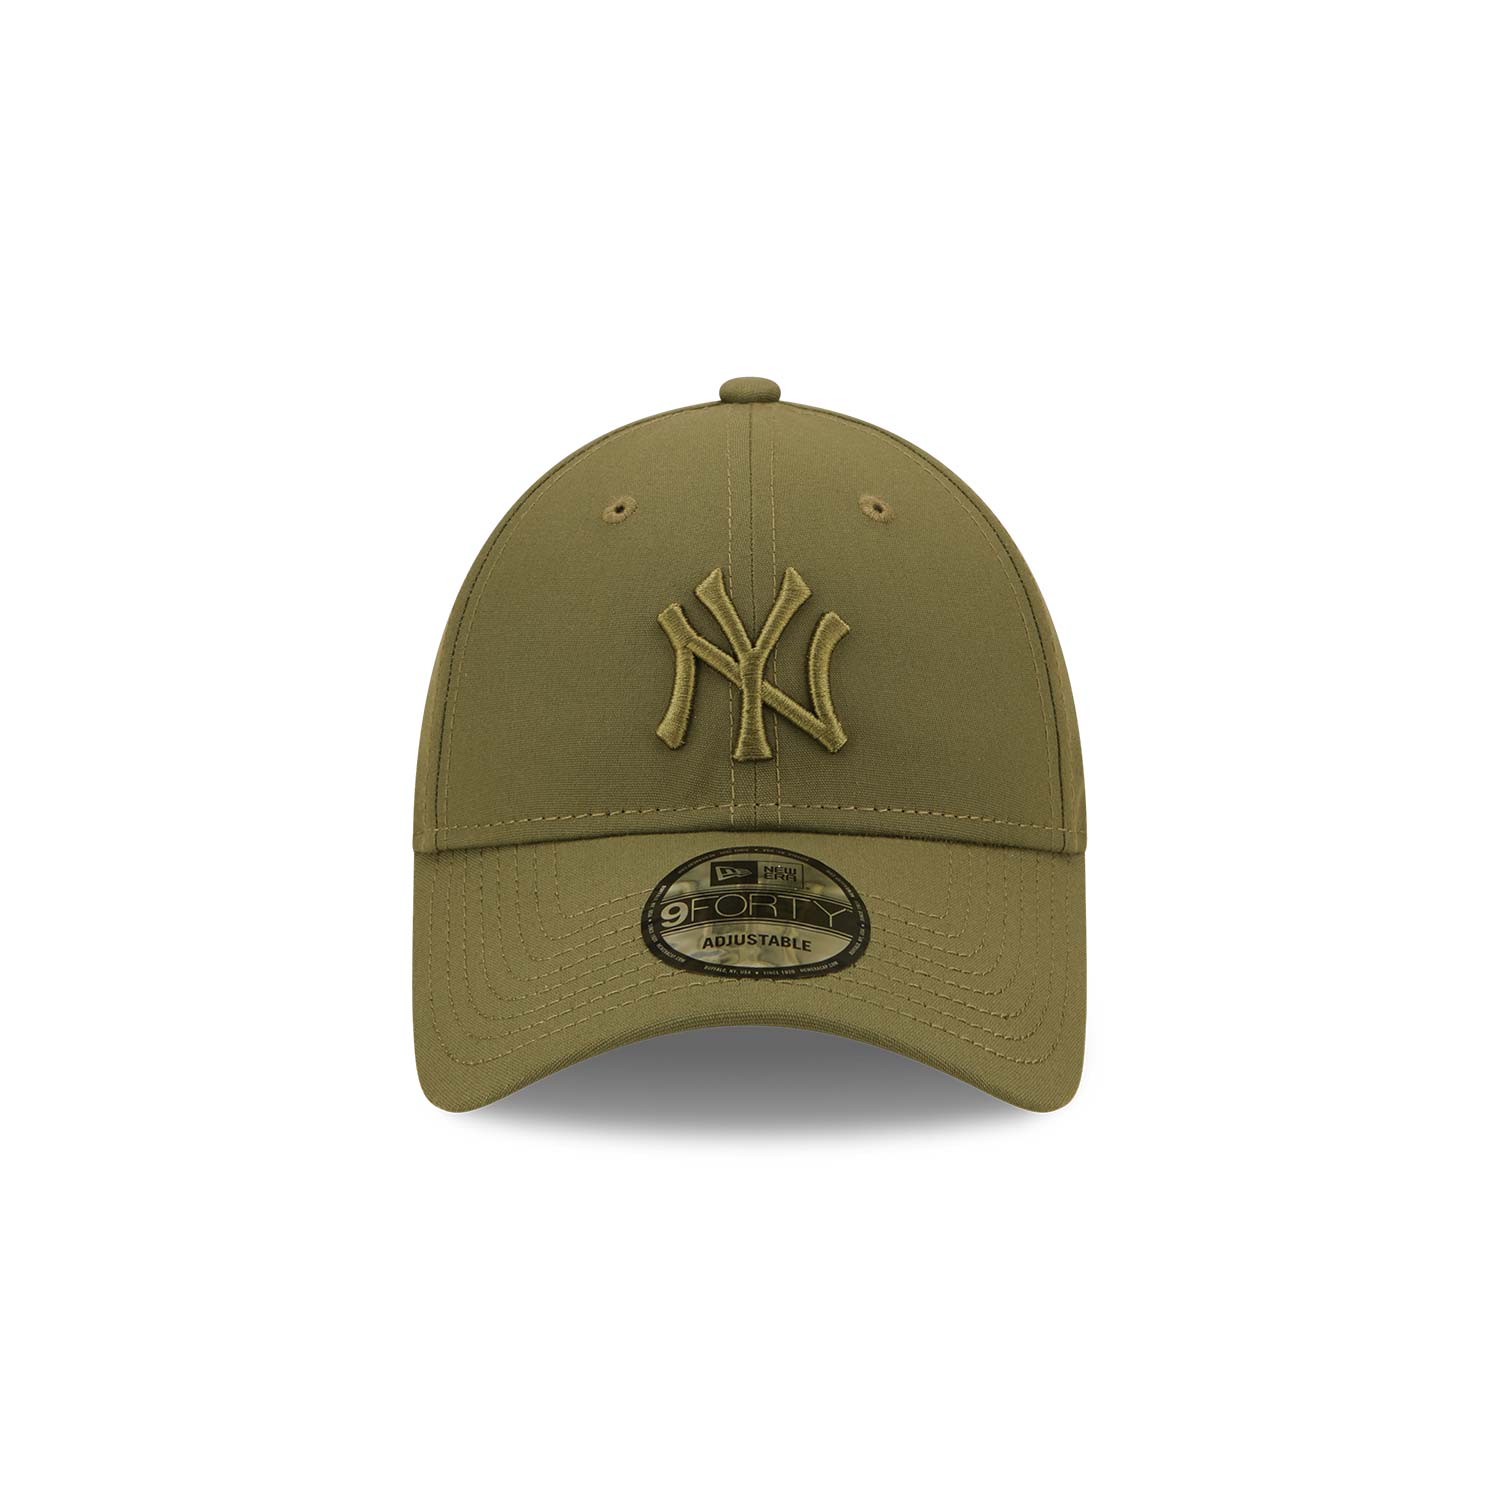 New York Yankees Repreve Medium Green 9FORTY Adjustable Cap